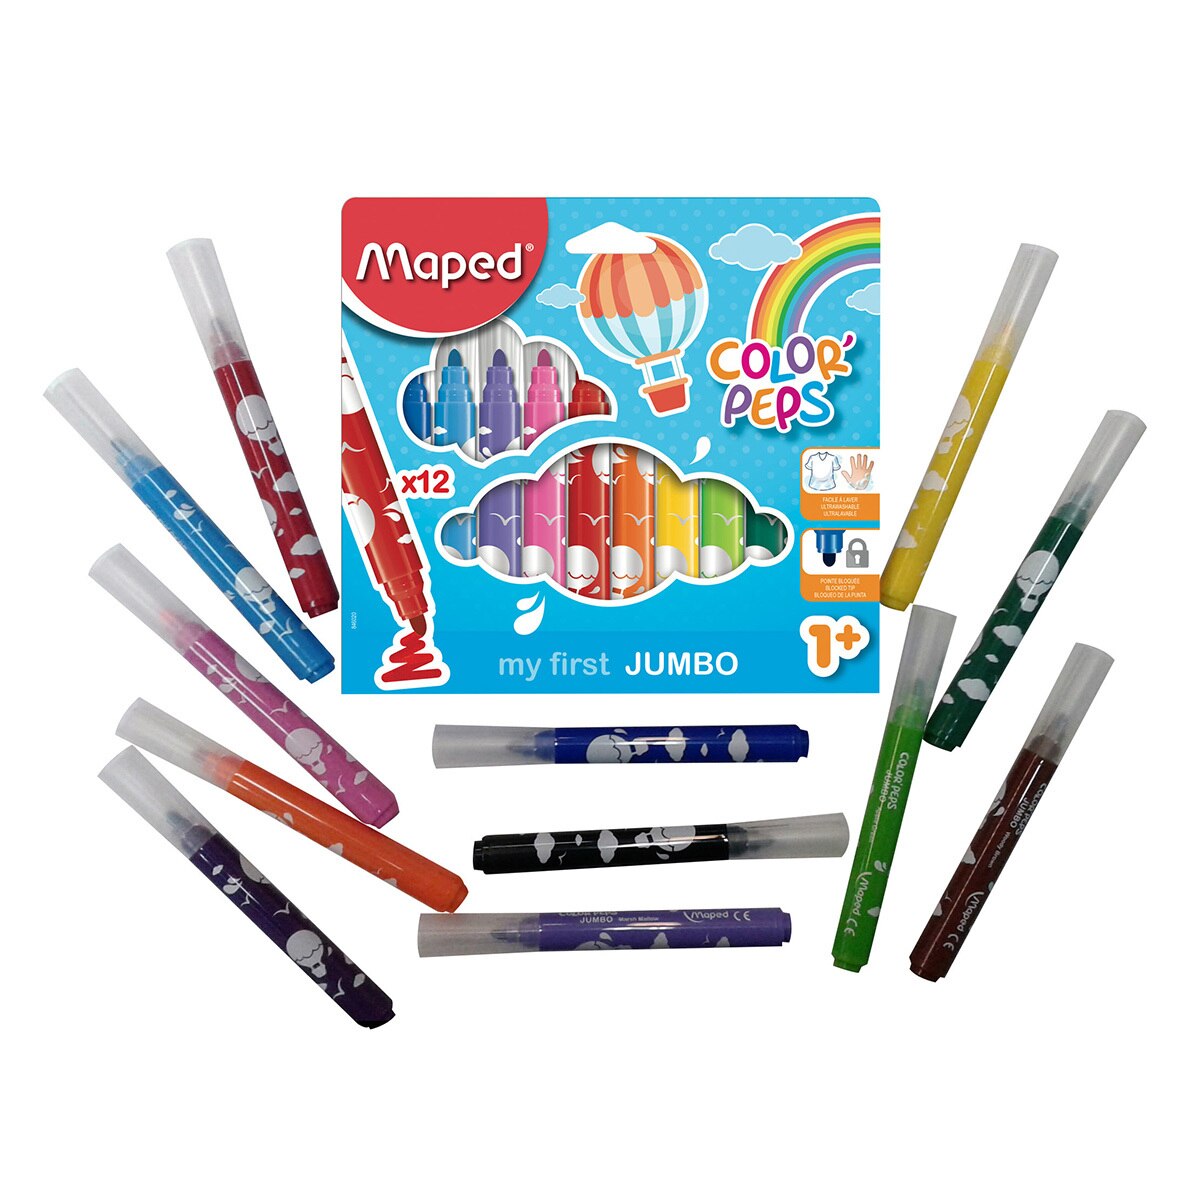 Maped kit plumones con crayolas de cera y lapices de colores jumbo primera edad